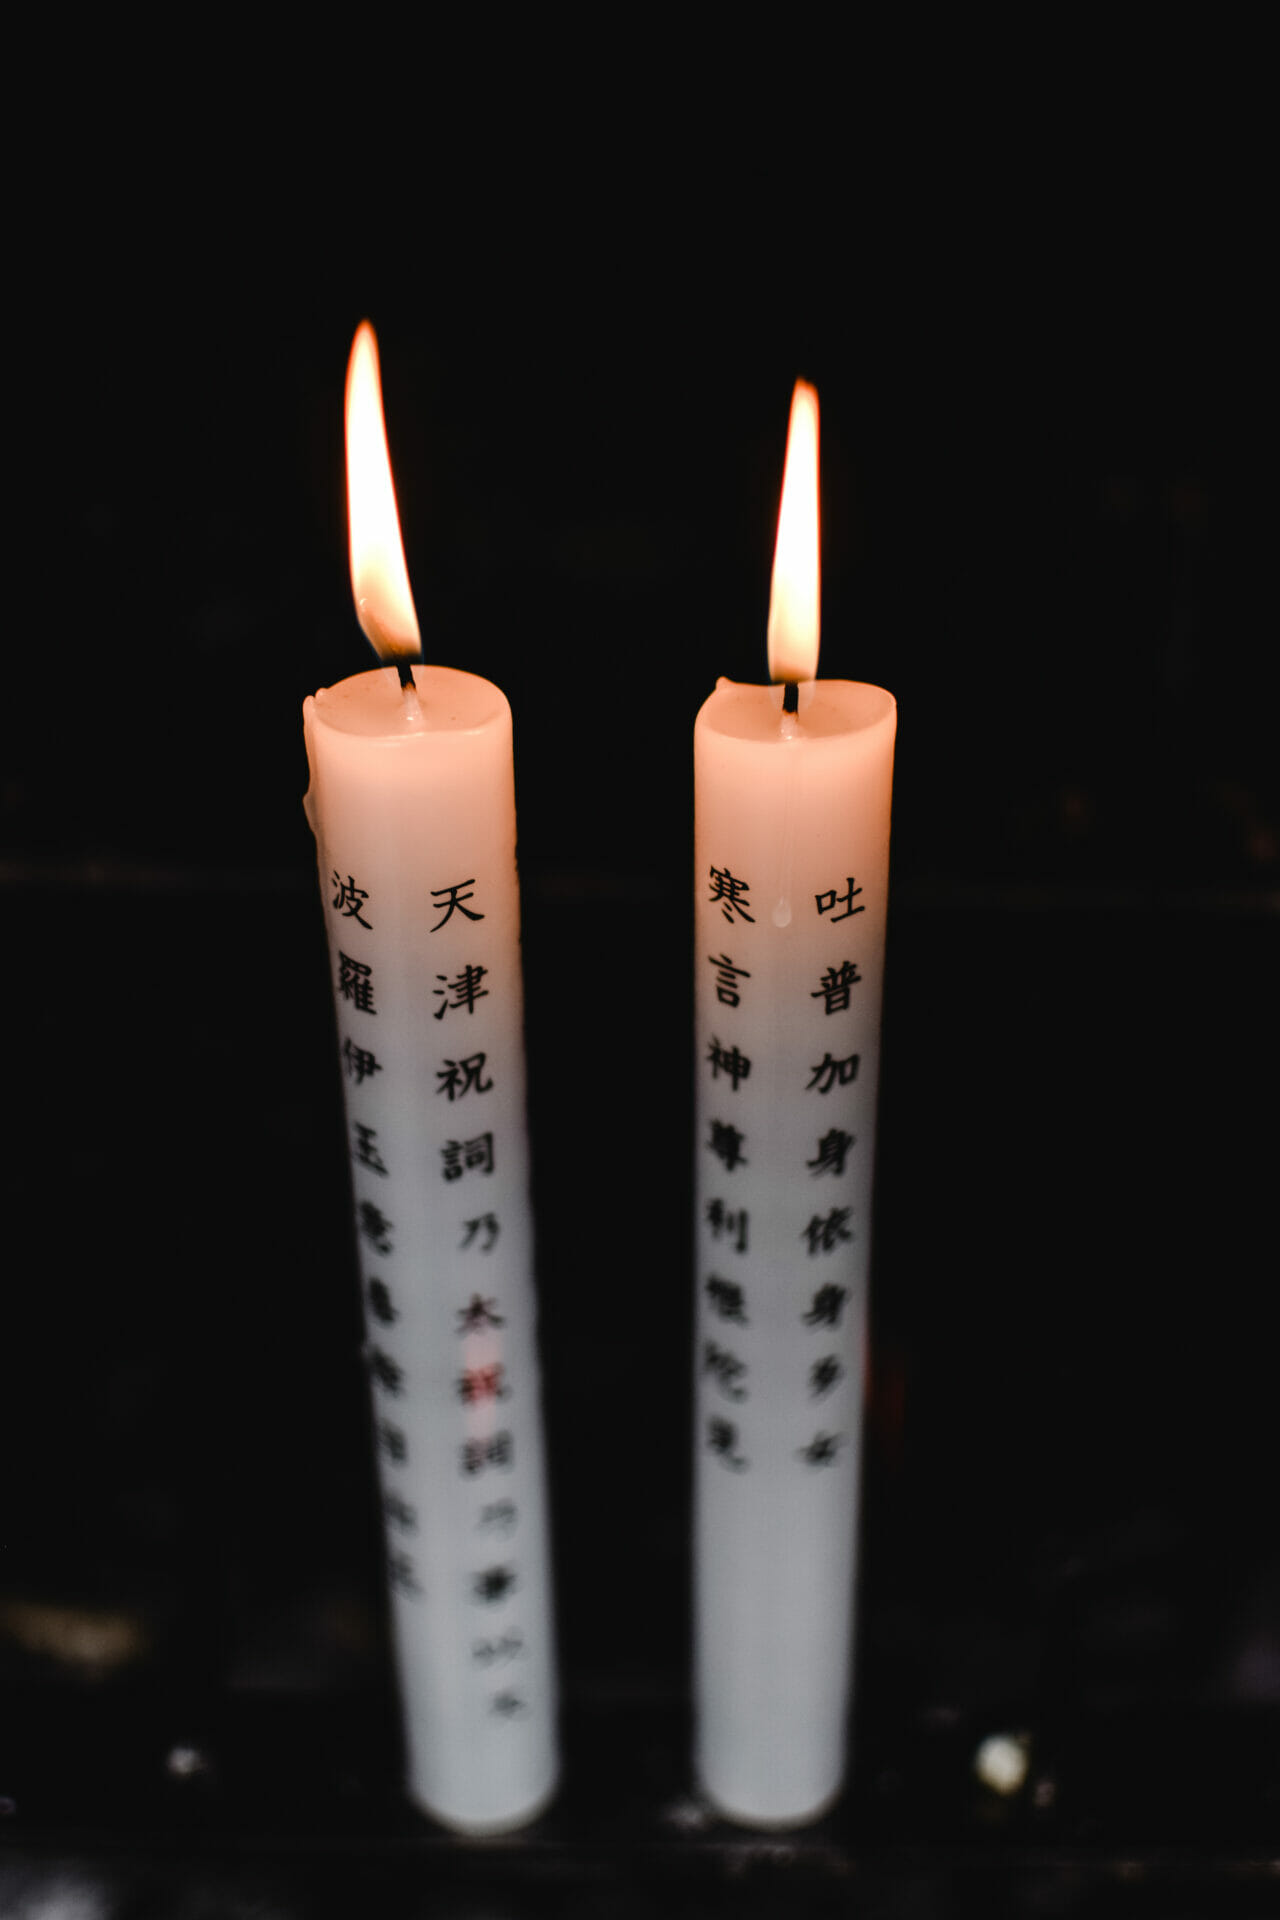 كيفية قراءة الشموع اليابانية للمبتدئين بالصور